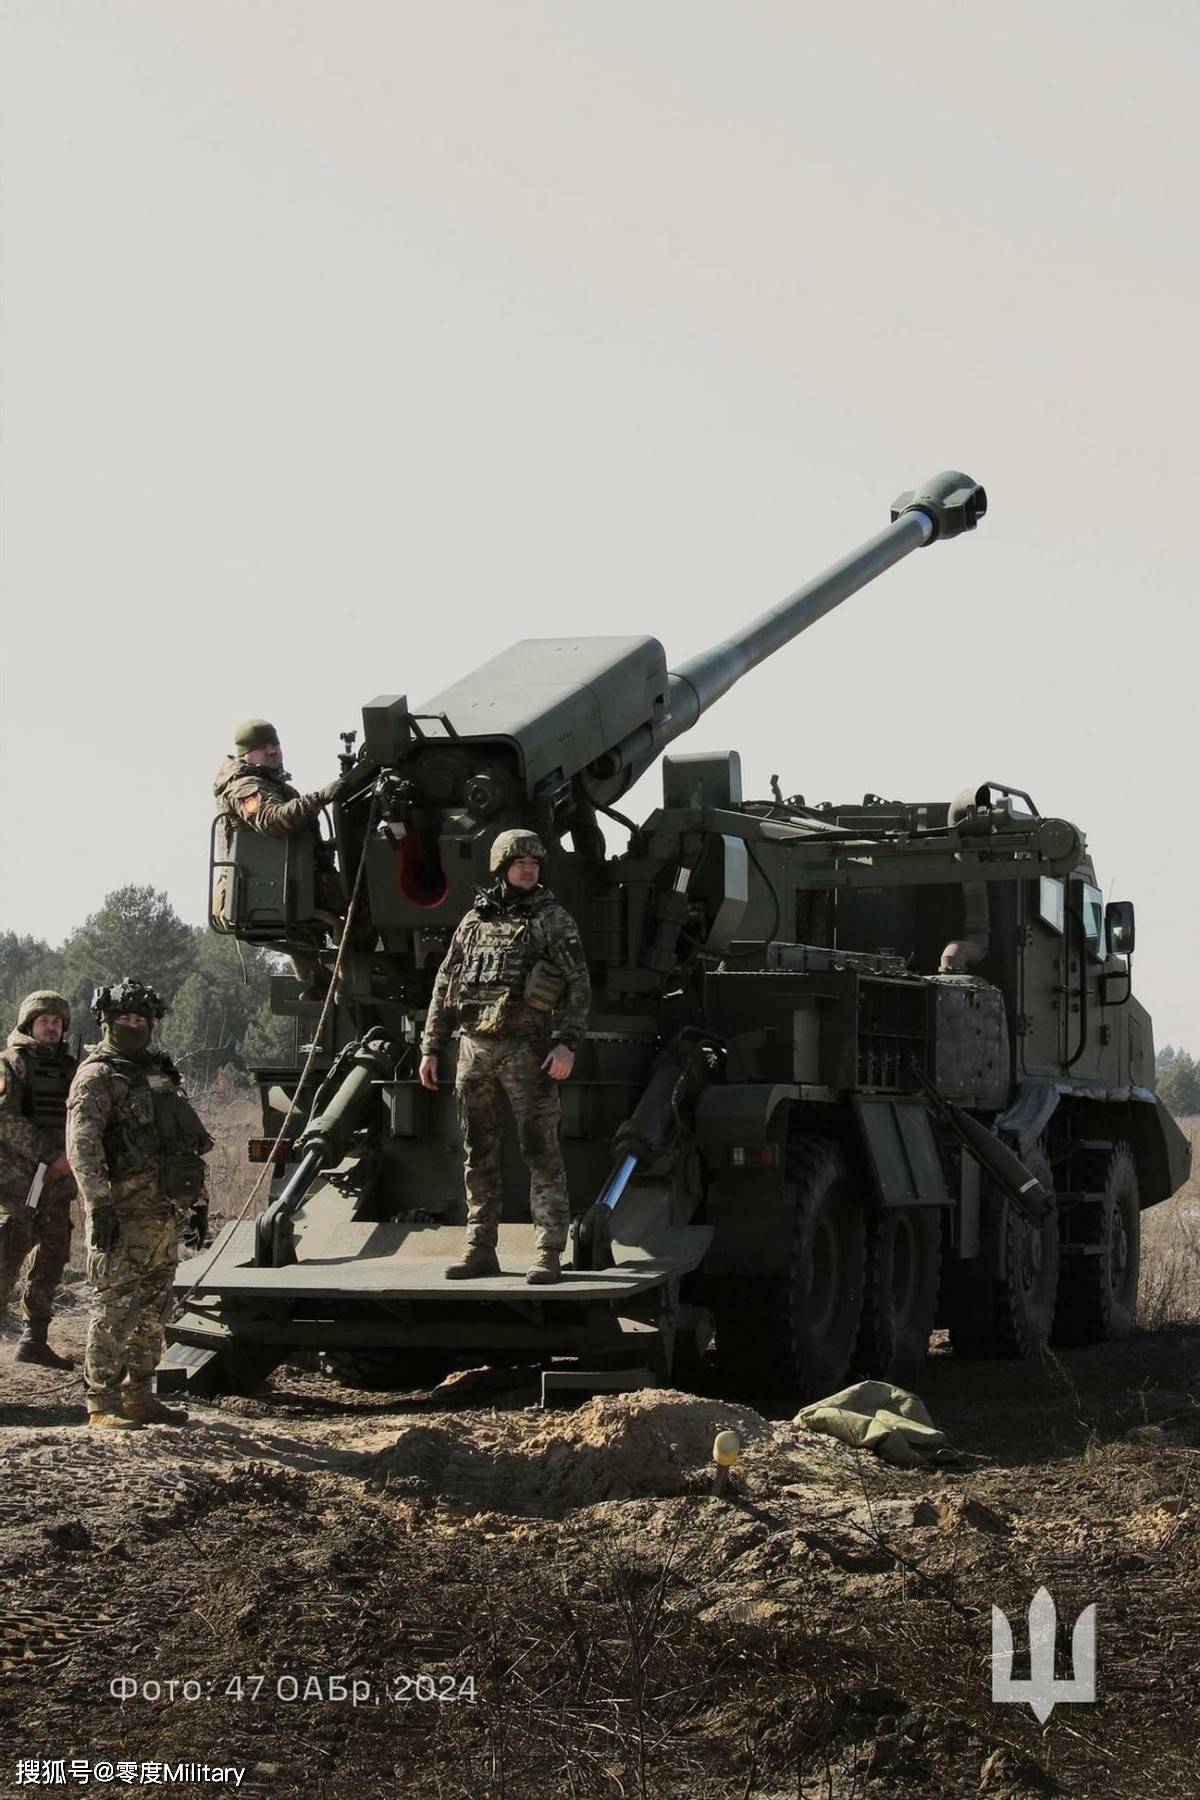 再次增加国产2s22博达纳自行榴弹炮的产量